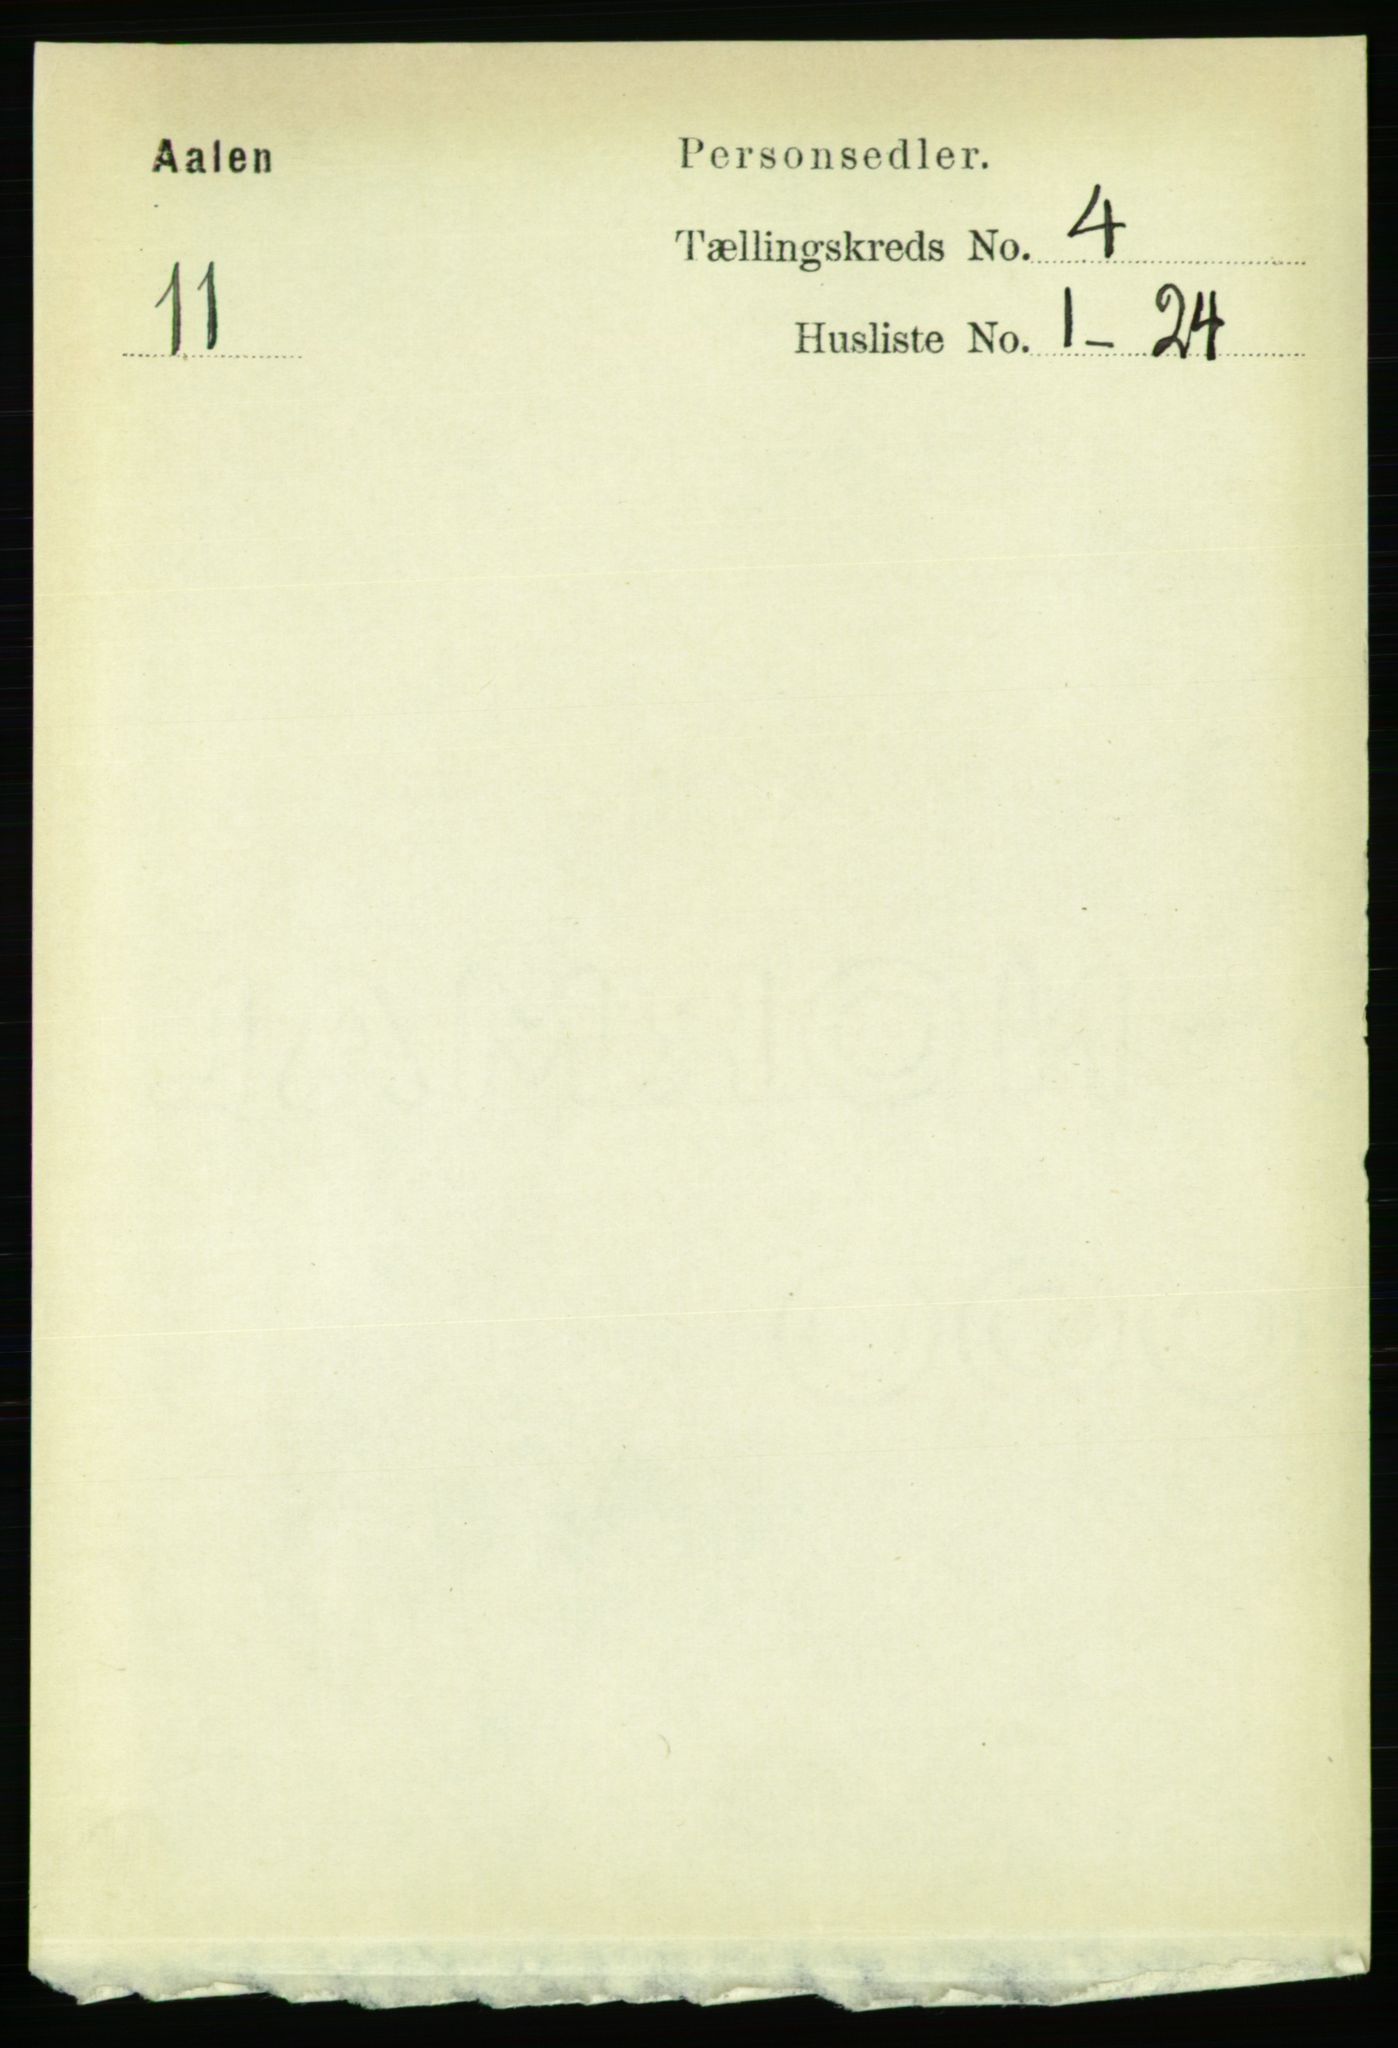 RA, Folketelling 1891 for 1644 Ålen herred, 1891, s. 1165